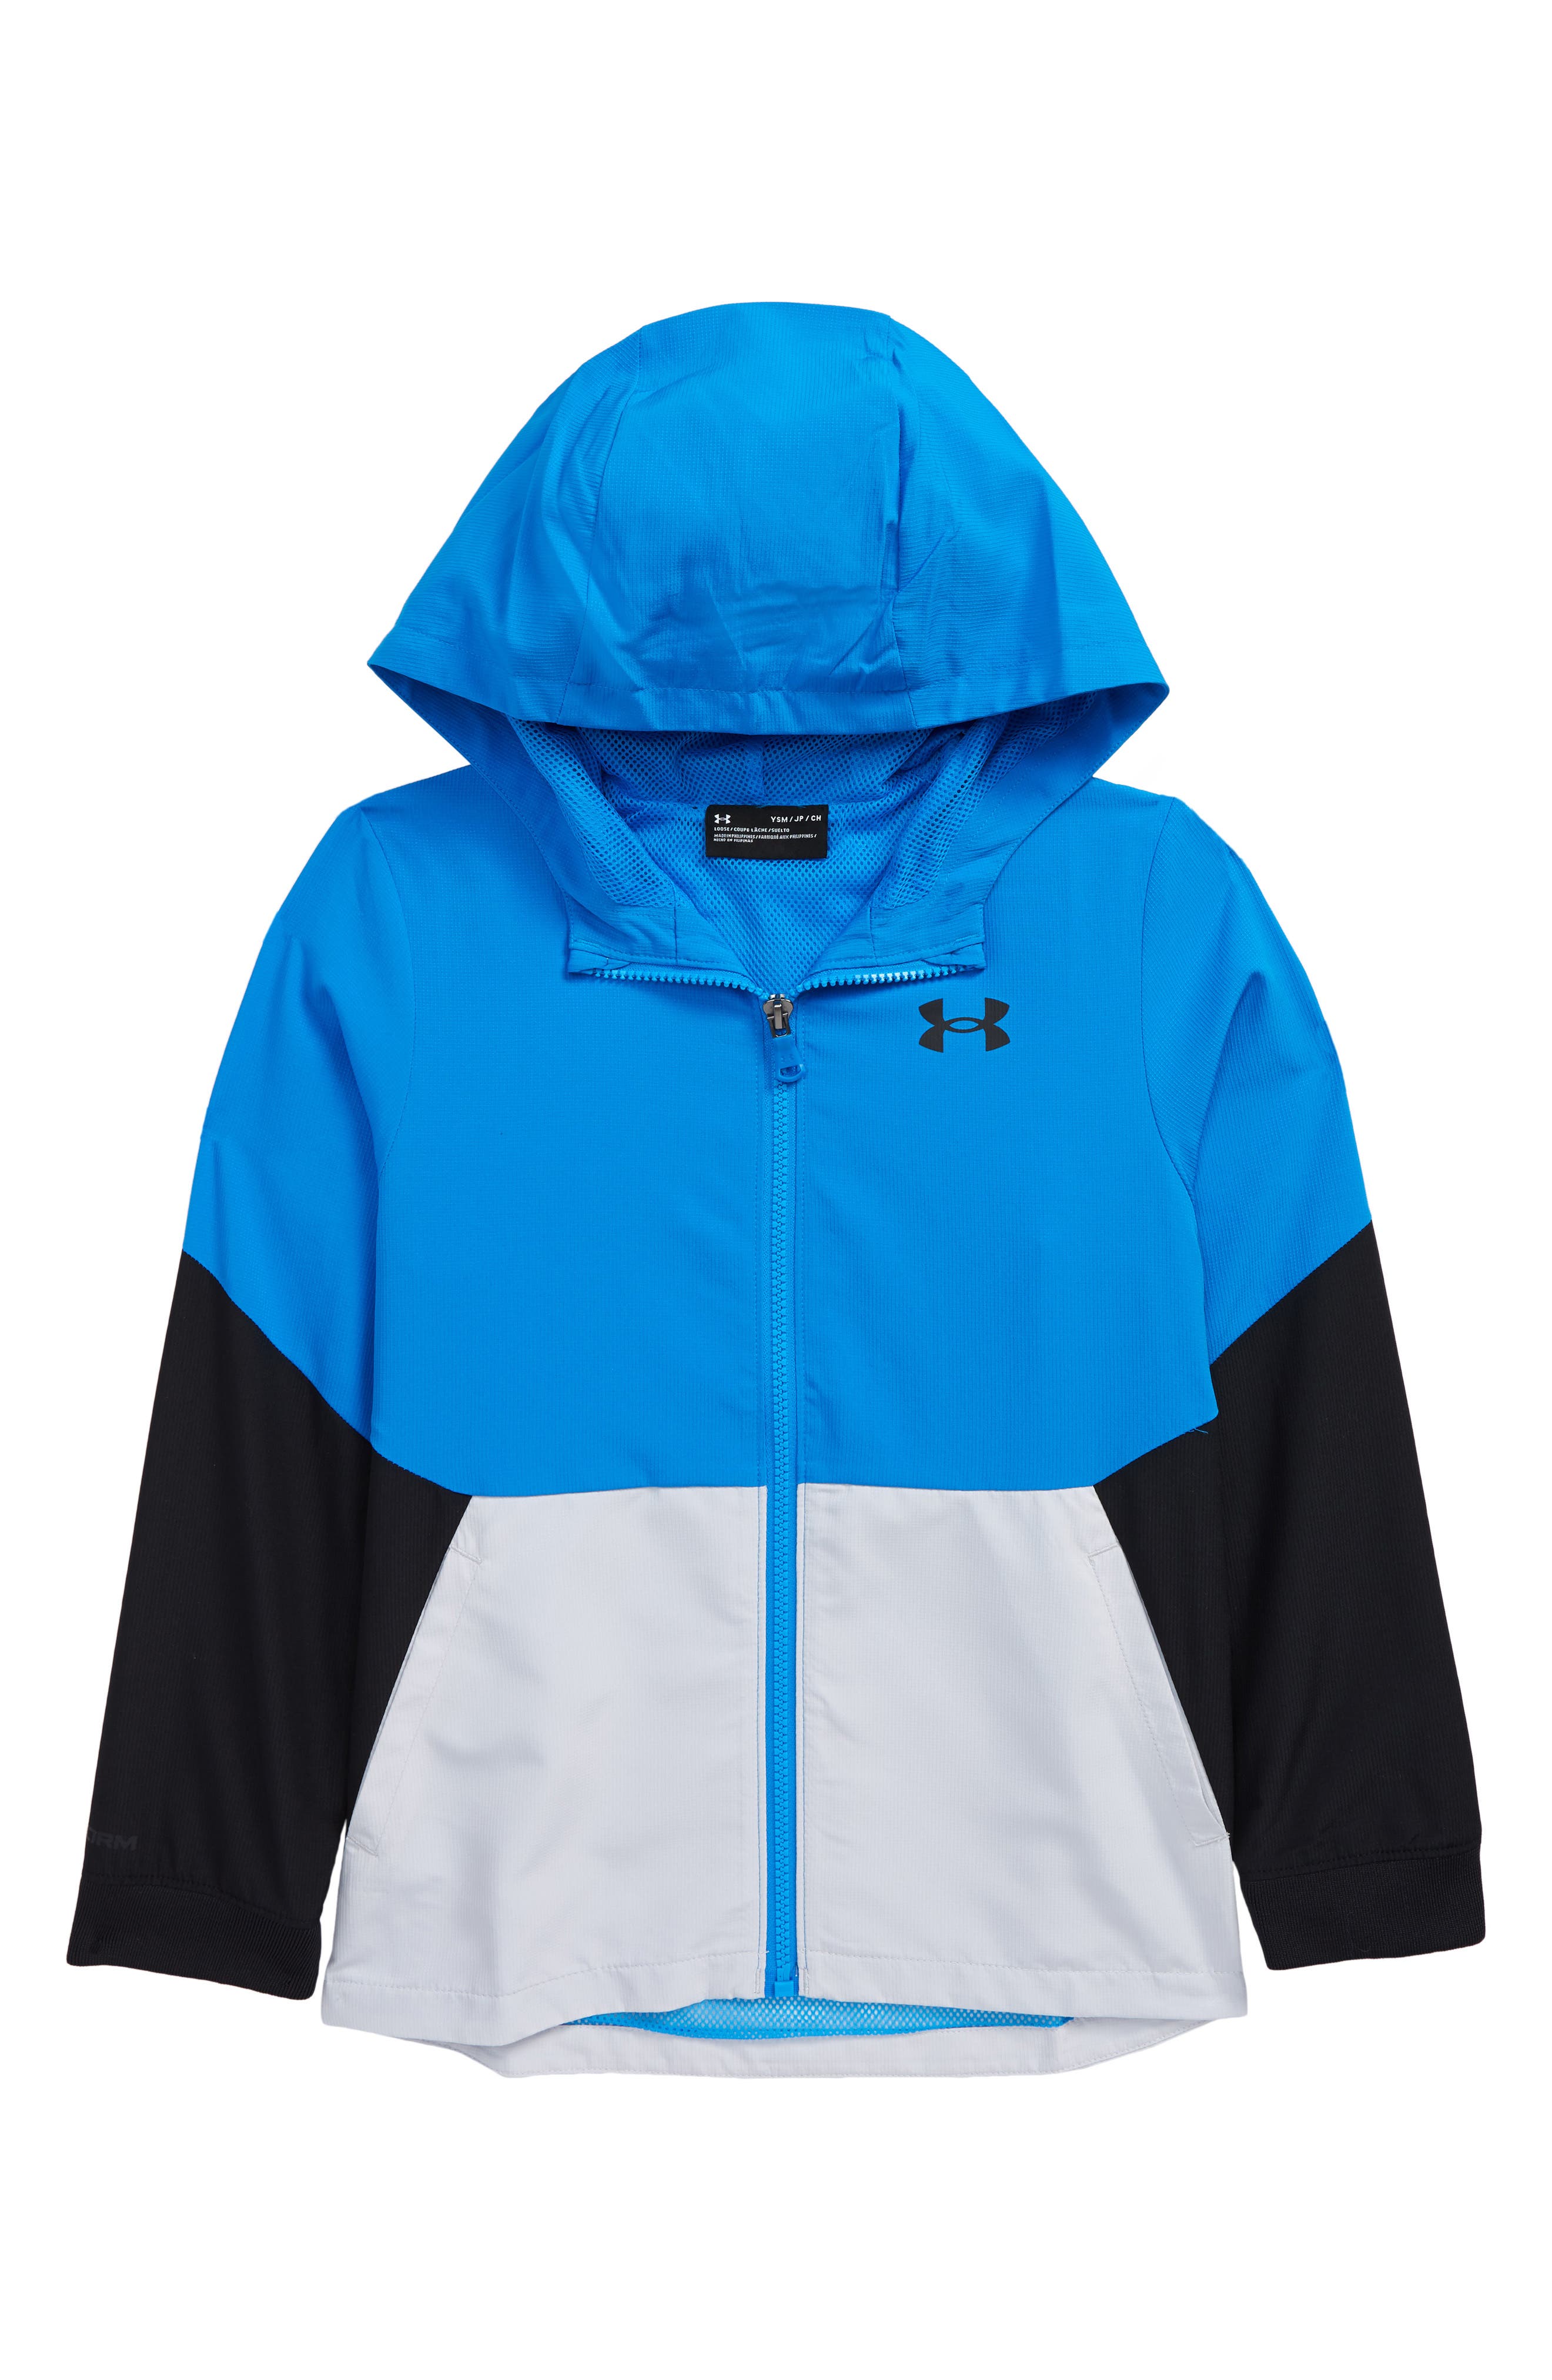 TLAENSON Boys Windbreaker Waterproof Hooded Lightweight Rain Jacket 